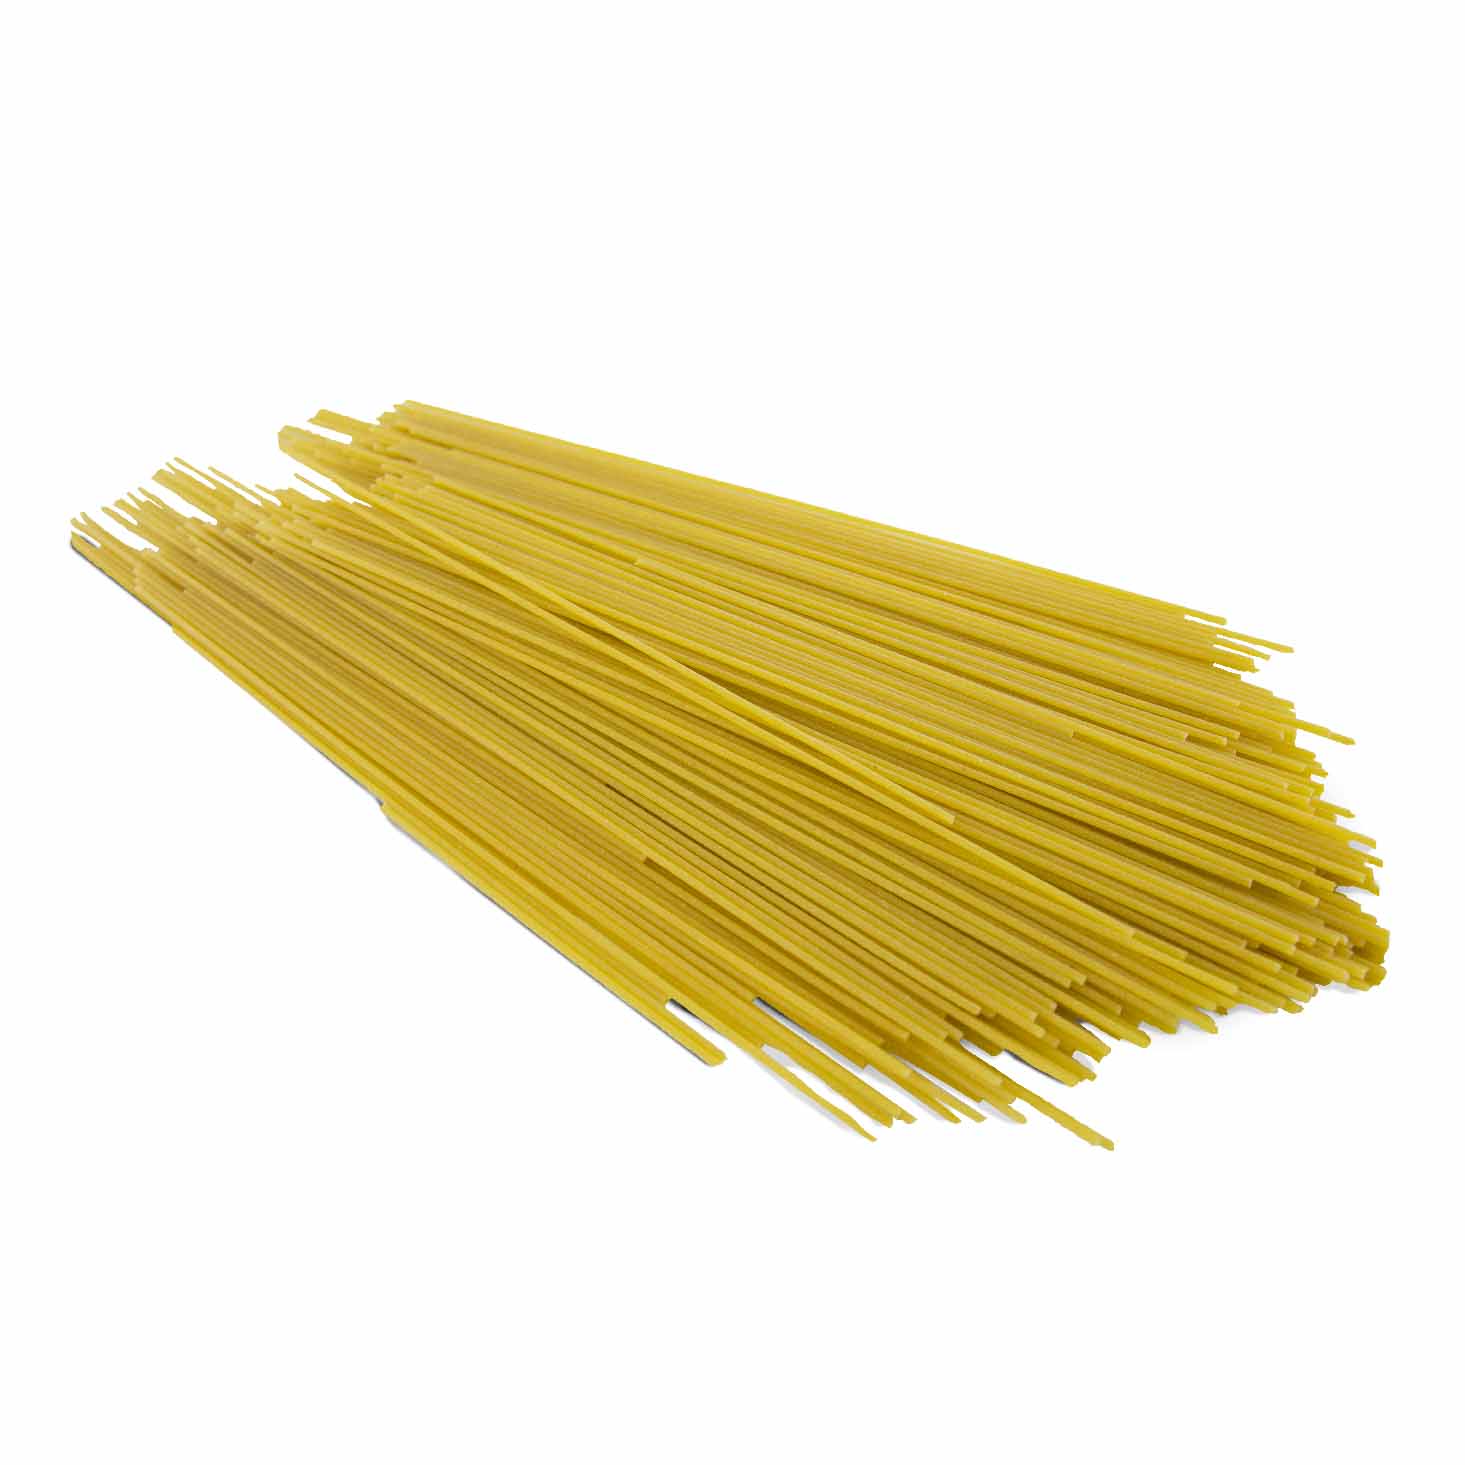 Spaghetti von unserer Hofmarke unverpackt-zoom